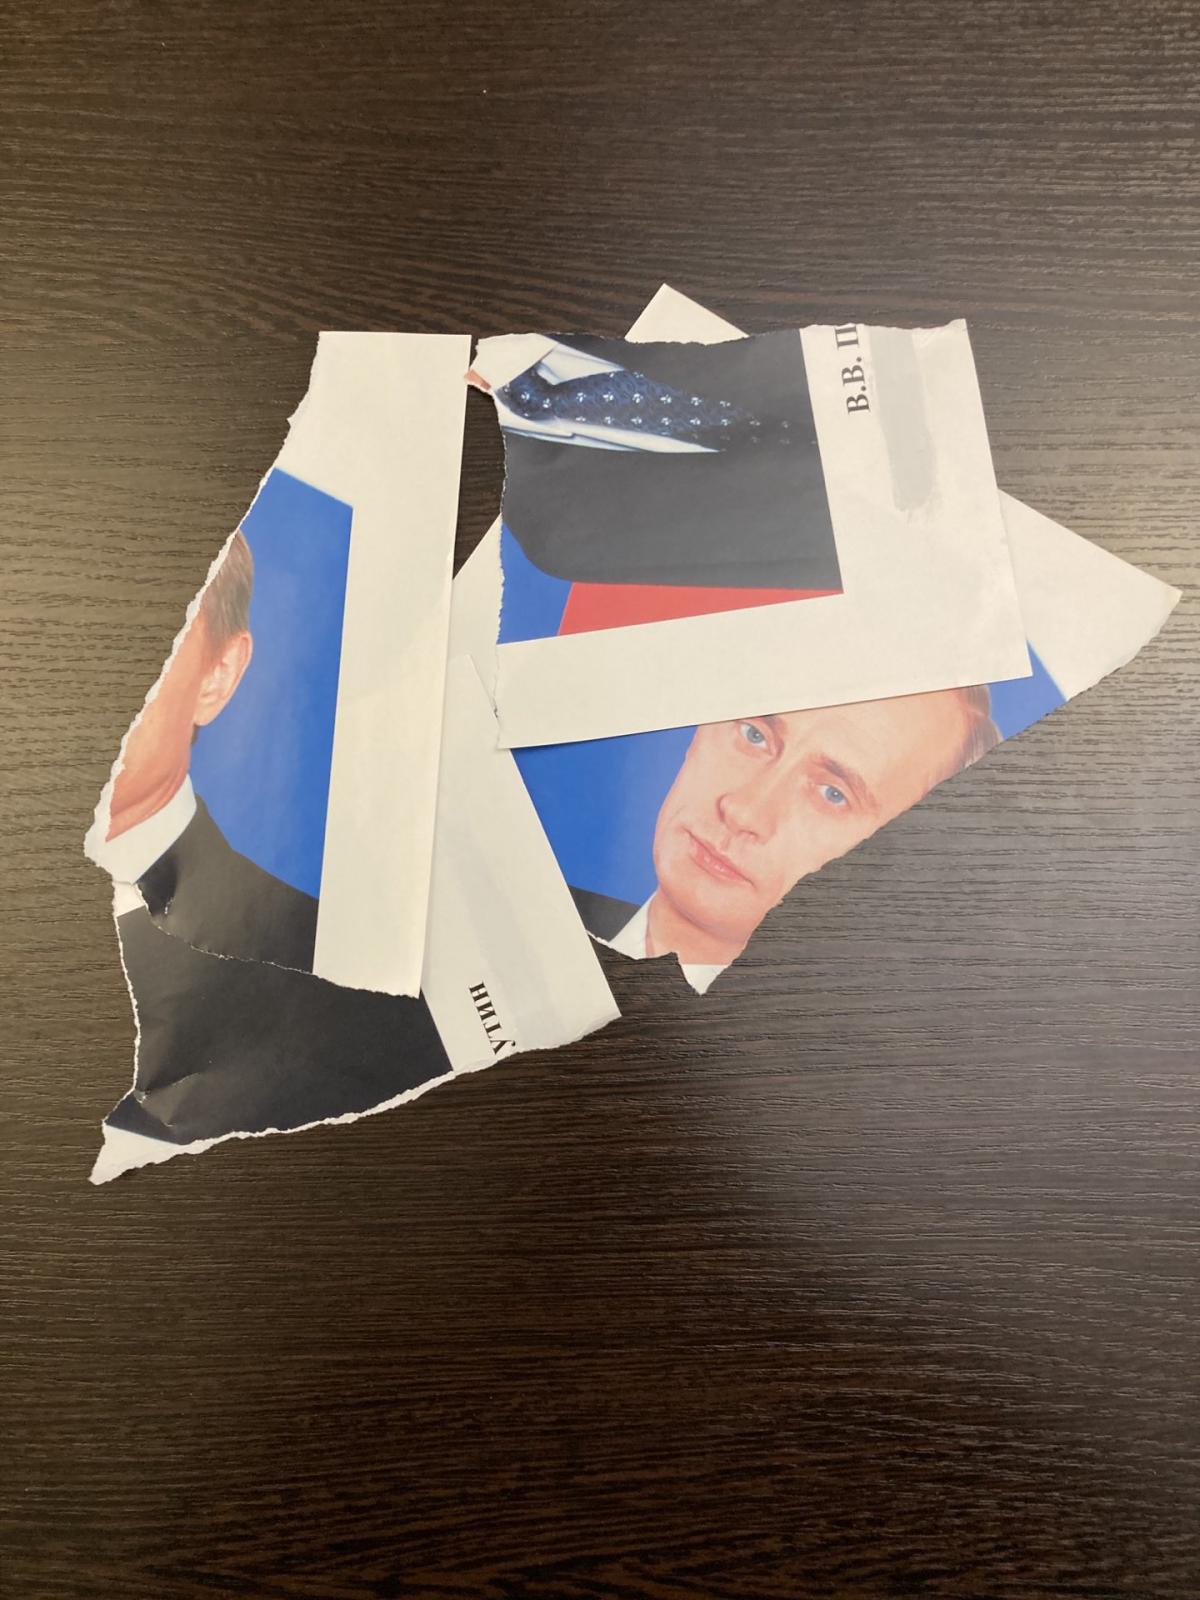 В культурной столице РФ порвали портрет Путина / фото Никита Юферев, Twitter